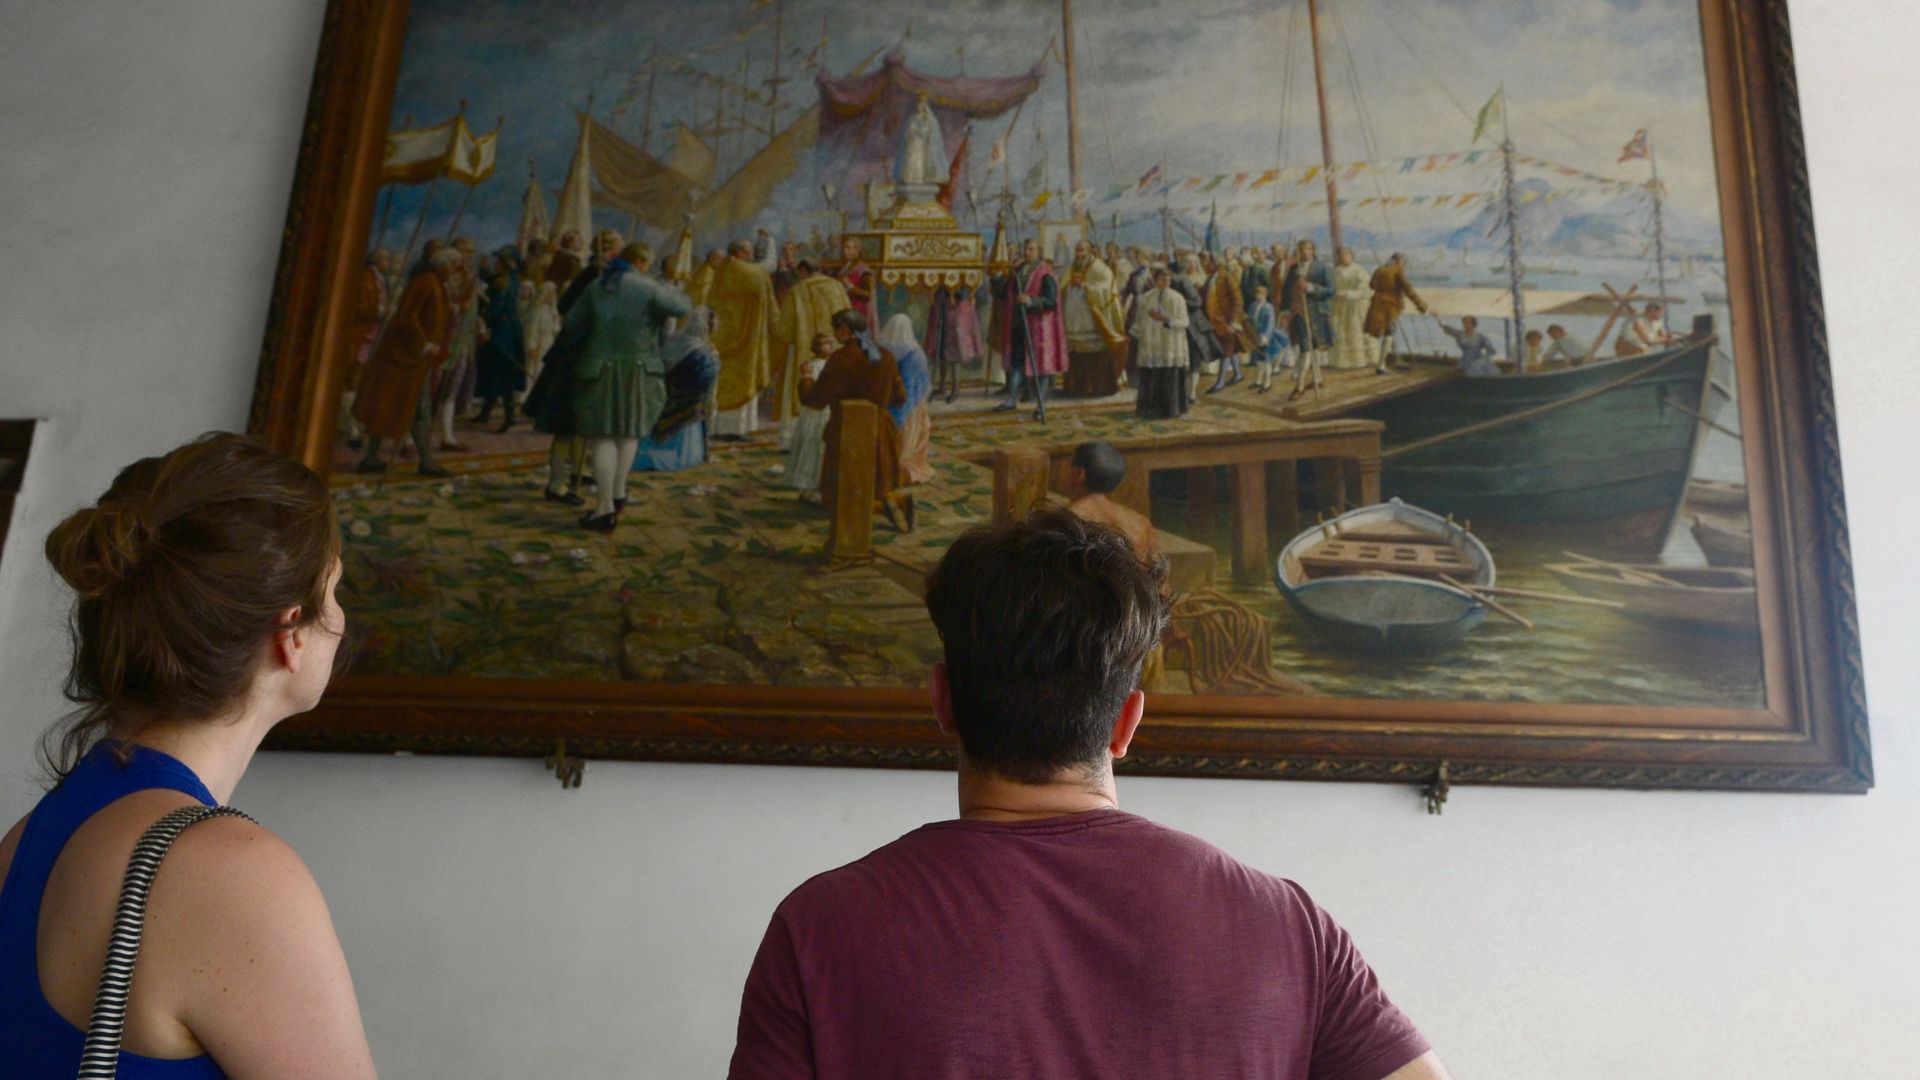 Data: 06/11/2015 - ES - Vila Velha - Turistas apreciando o quadro O Milagre da Seca que foi feita em 1769 e fica exposto no Convento da Penha - Editoria: Cidades - Foto: Ricardo Medeiros - GZ